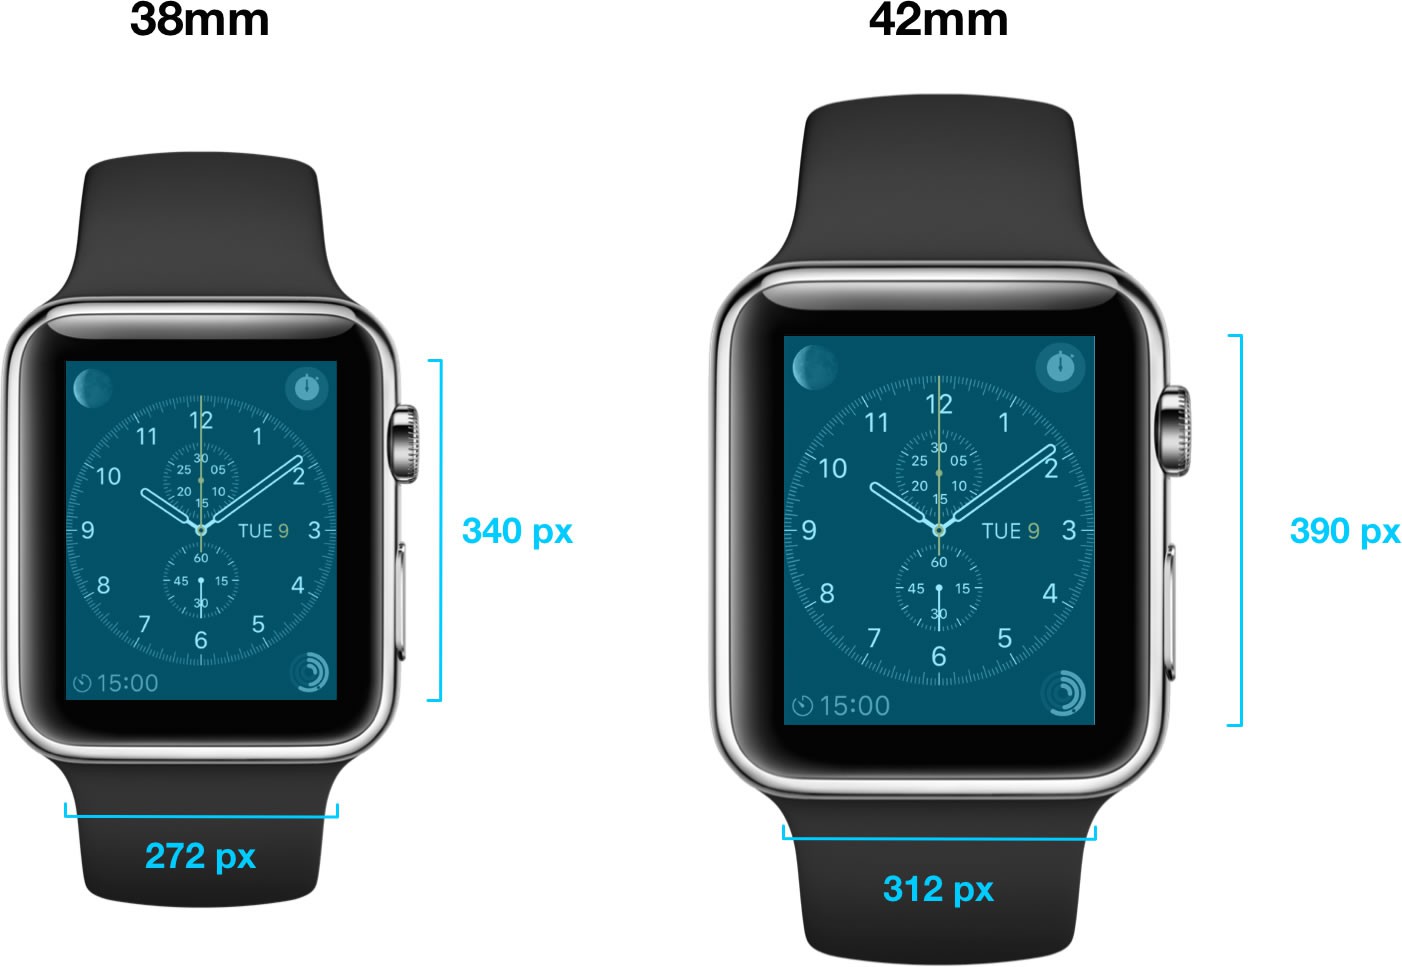 Apple Watch (4)